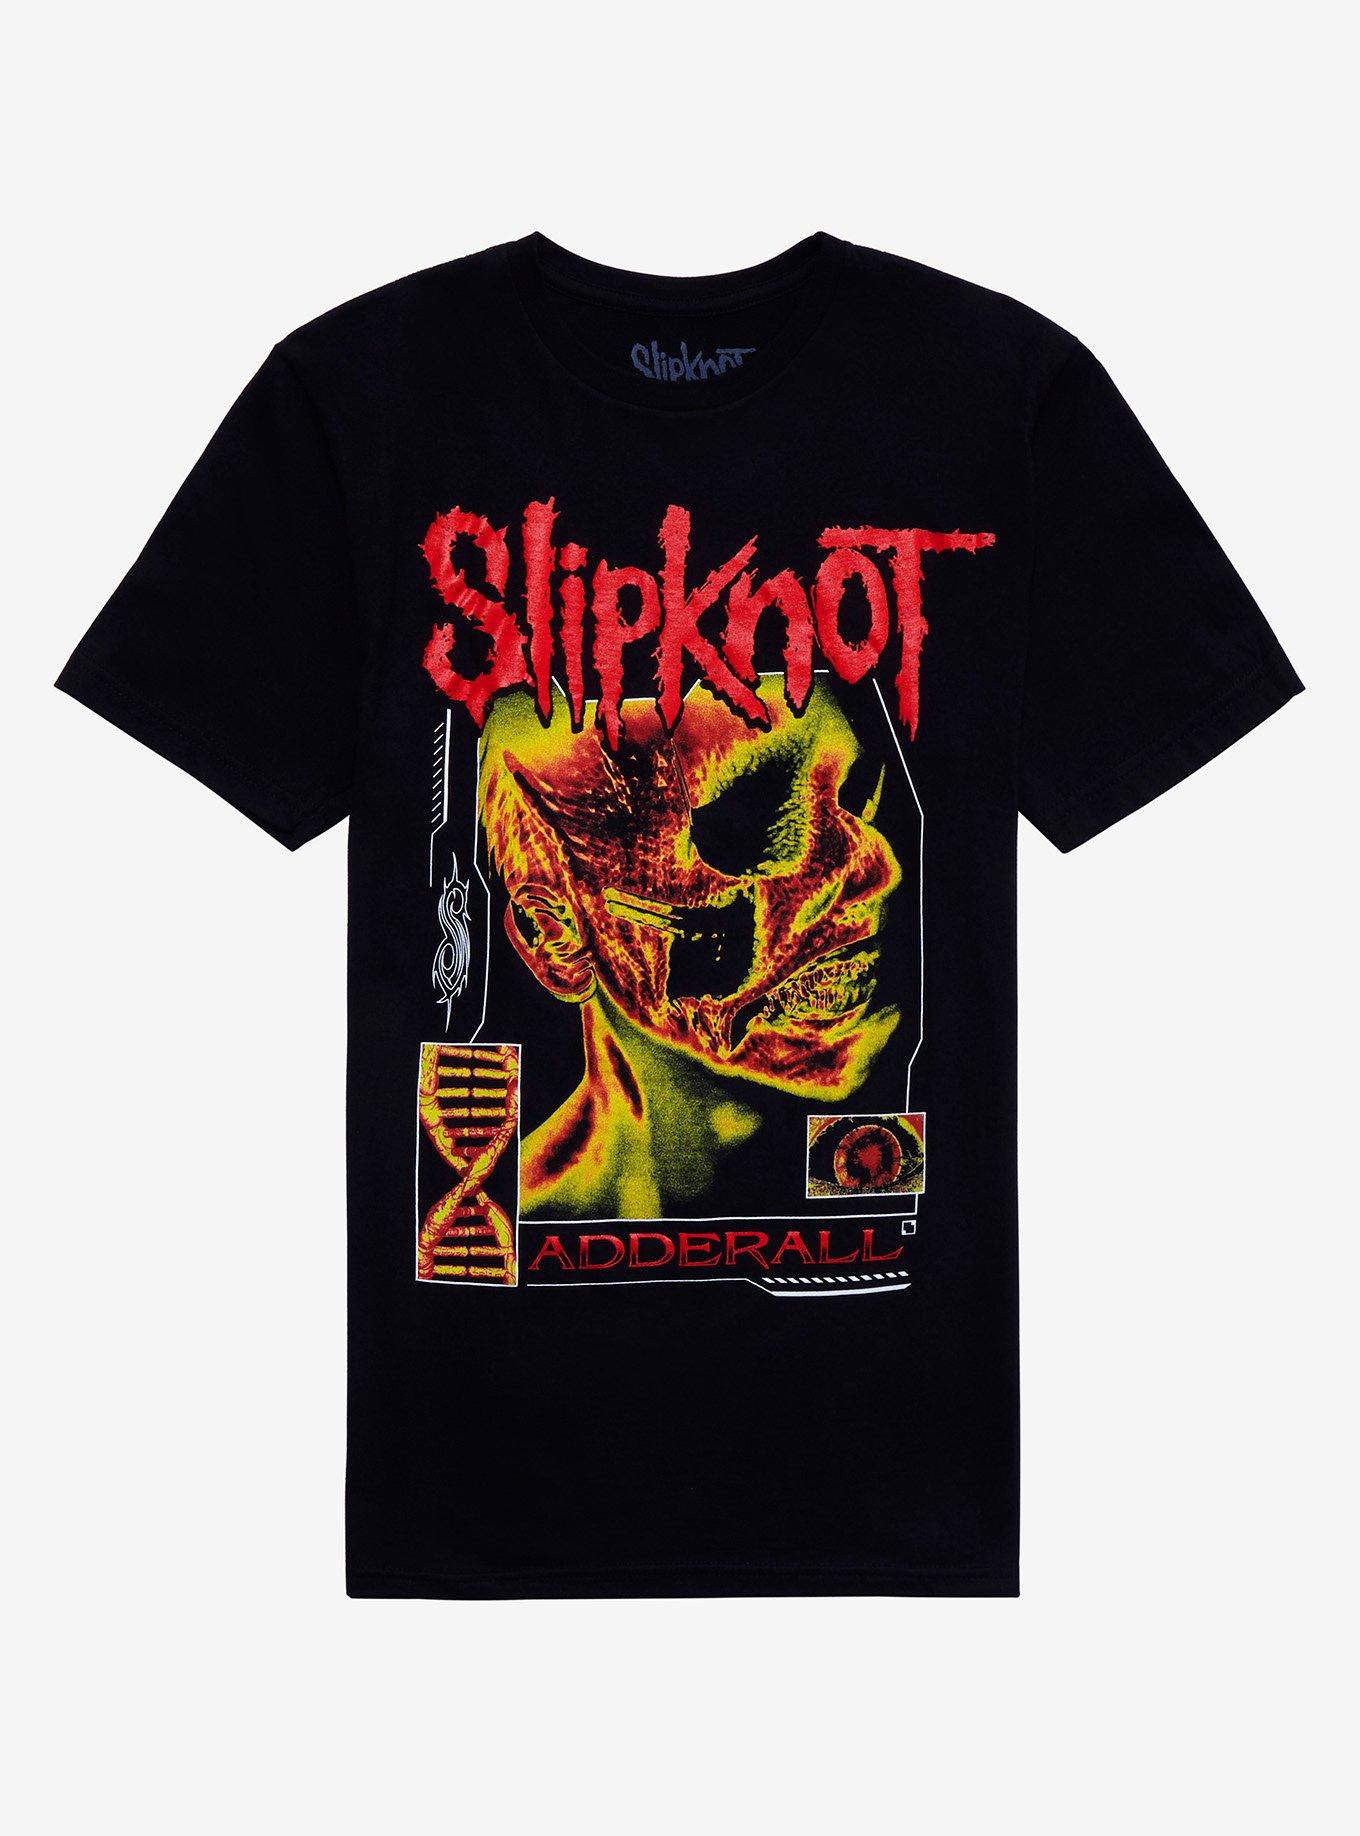 Slipknot Adderall Boyfriend Fit Girls T-Shirt | Hot Topic